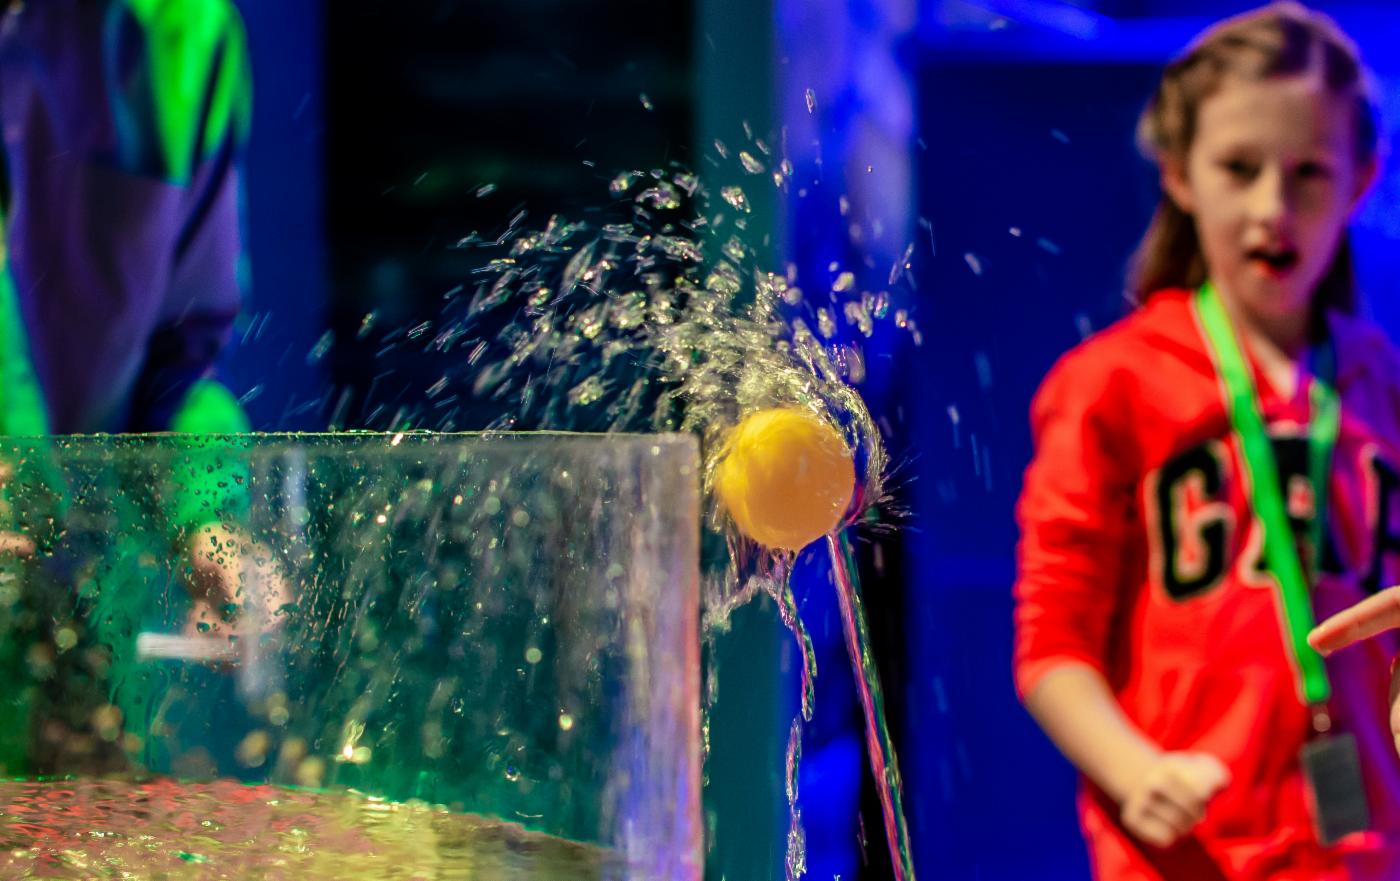 Bildet viser en jente som kaster en gul ball i en beholder med vann